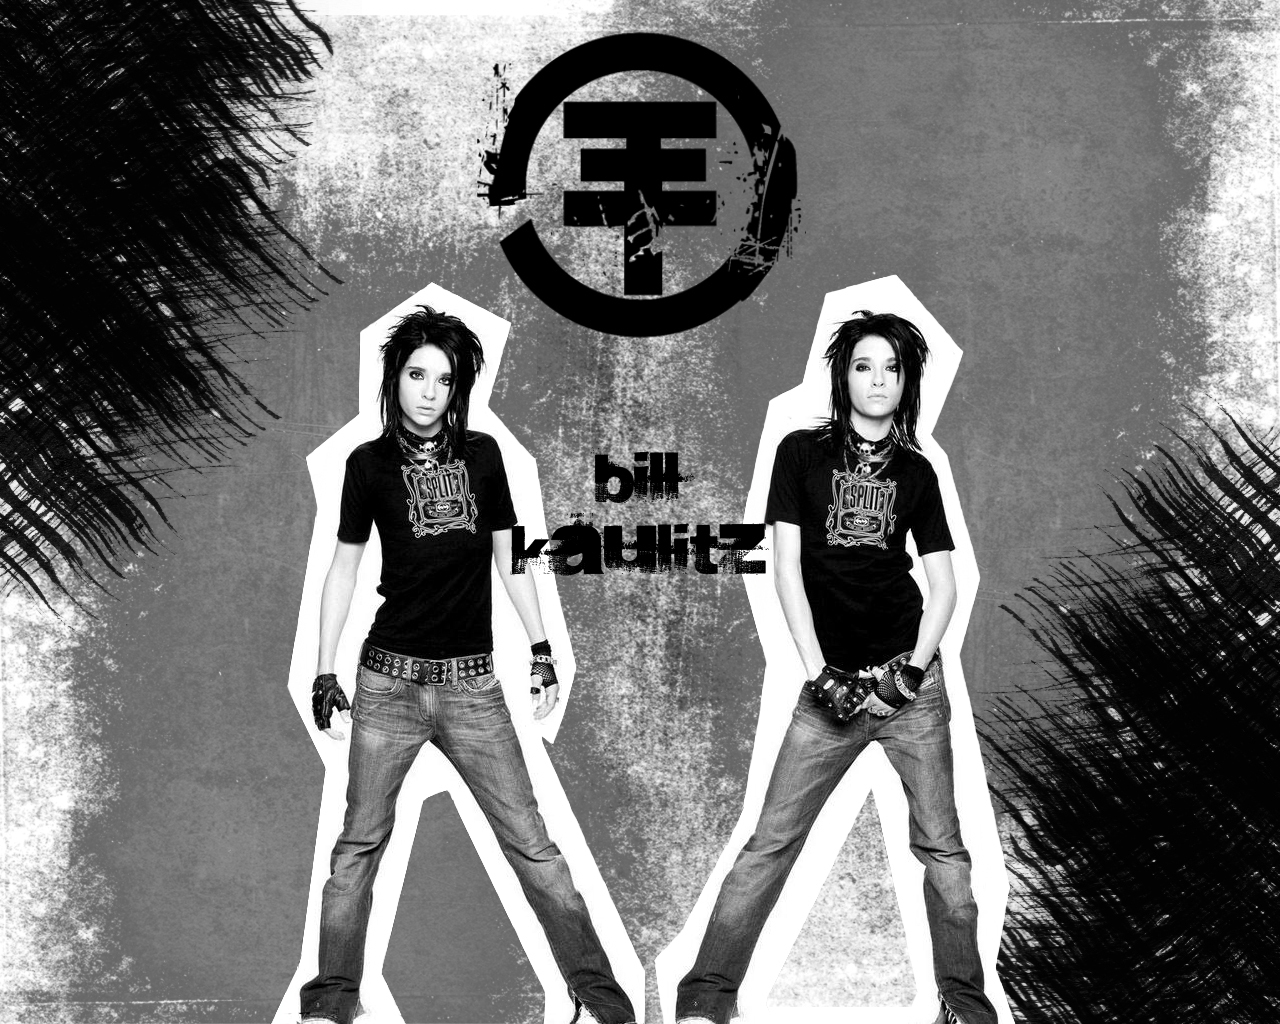 Bill 壁紙 Tokio Hotel 壁紙 ファンポップ